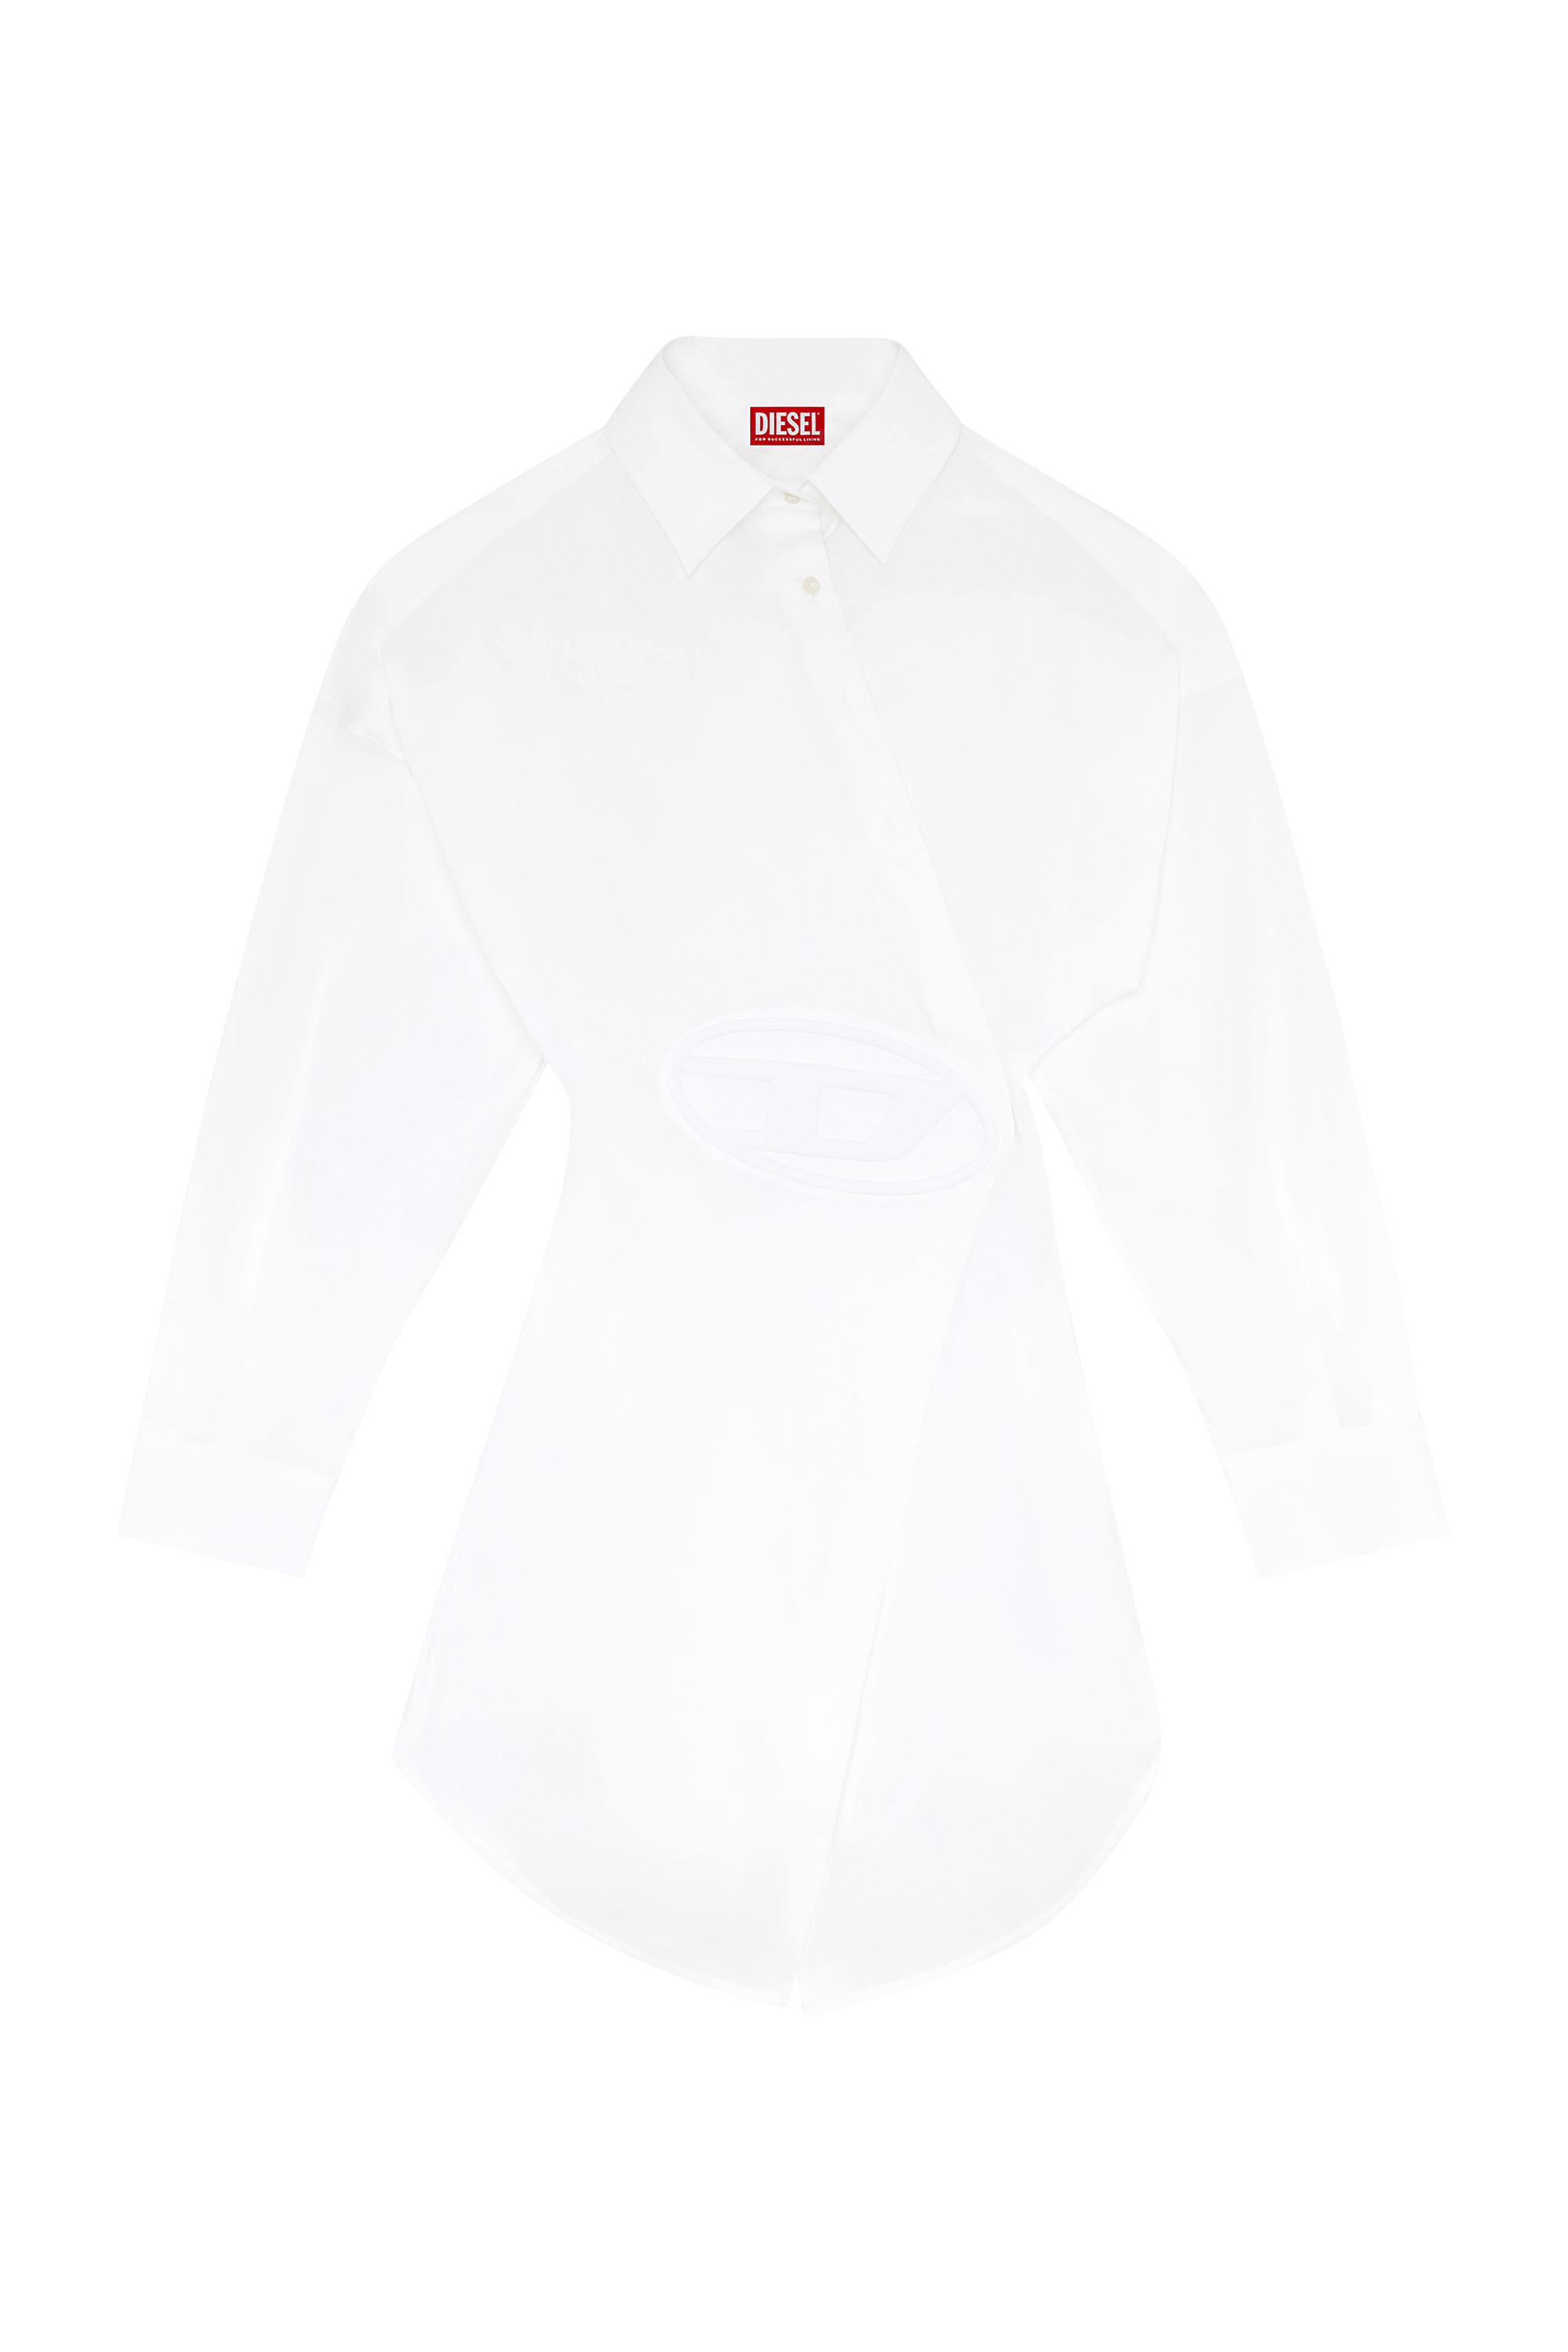 Diesel - D-SIZEN-N1, Woman Short shirt dress in stretch poplin in White - Image 4